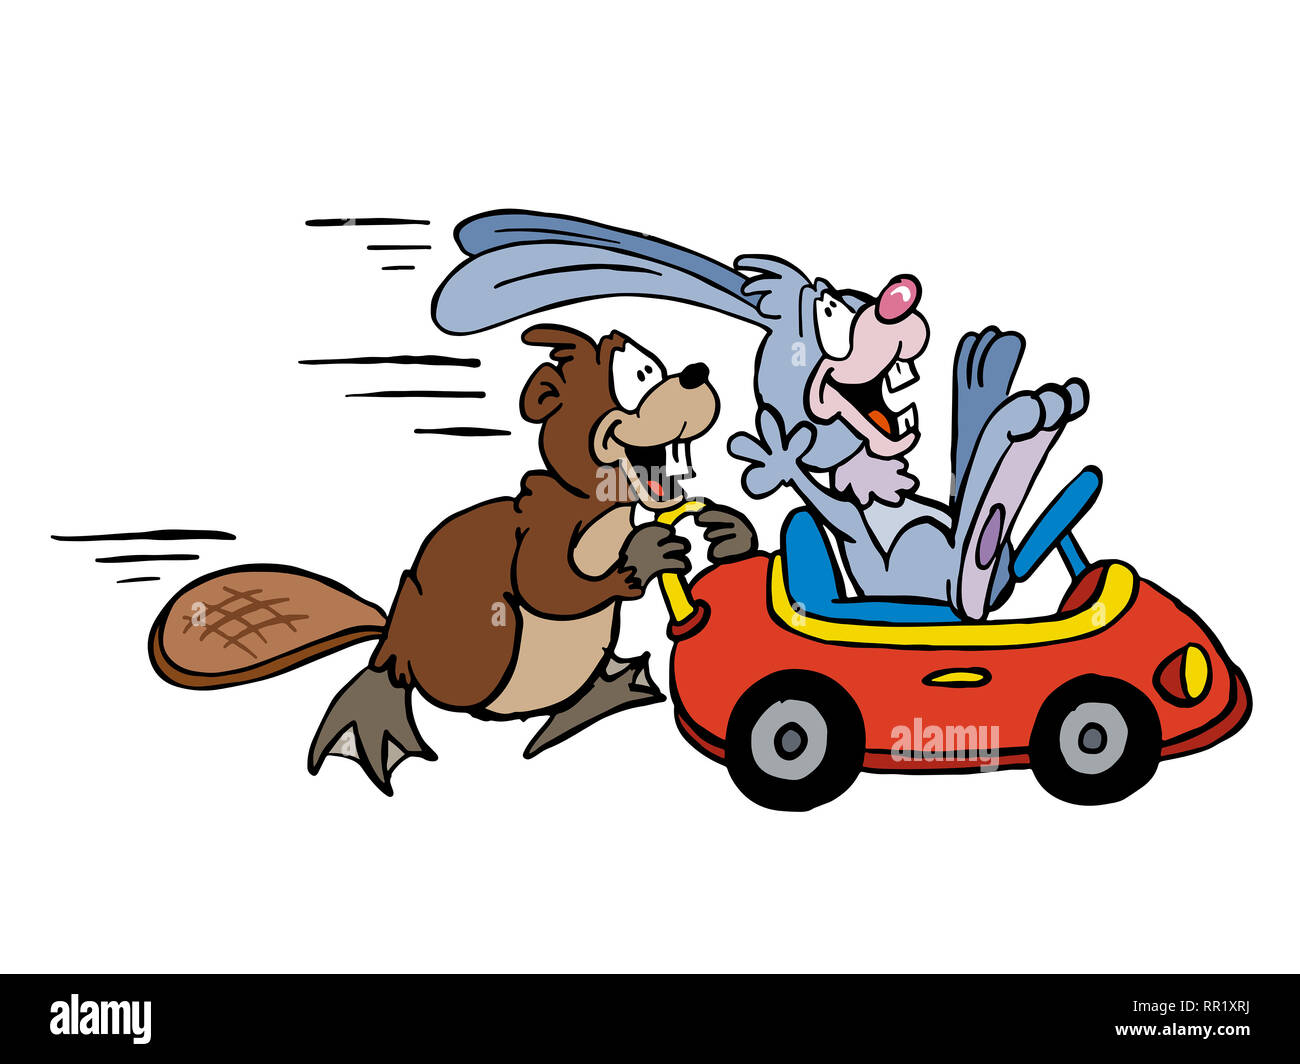 Le castor et le lapin jouant avec une petite voiture Banque D'Images